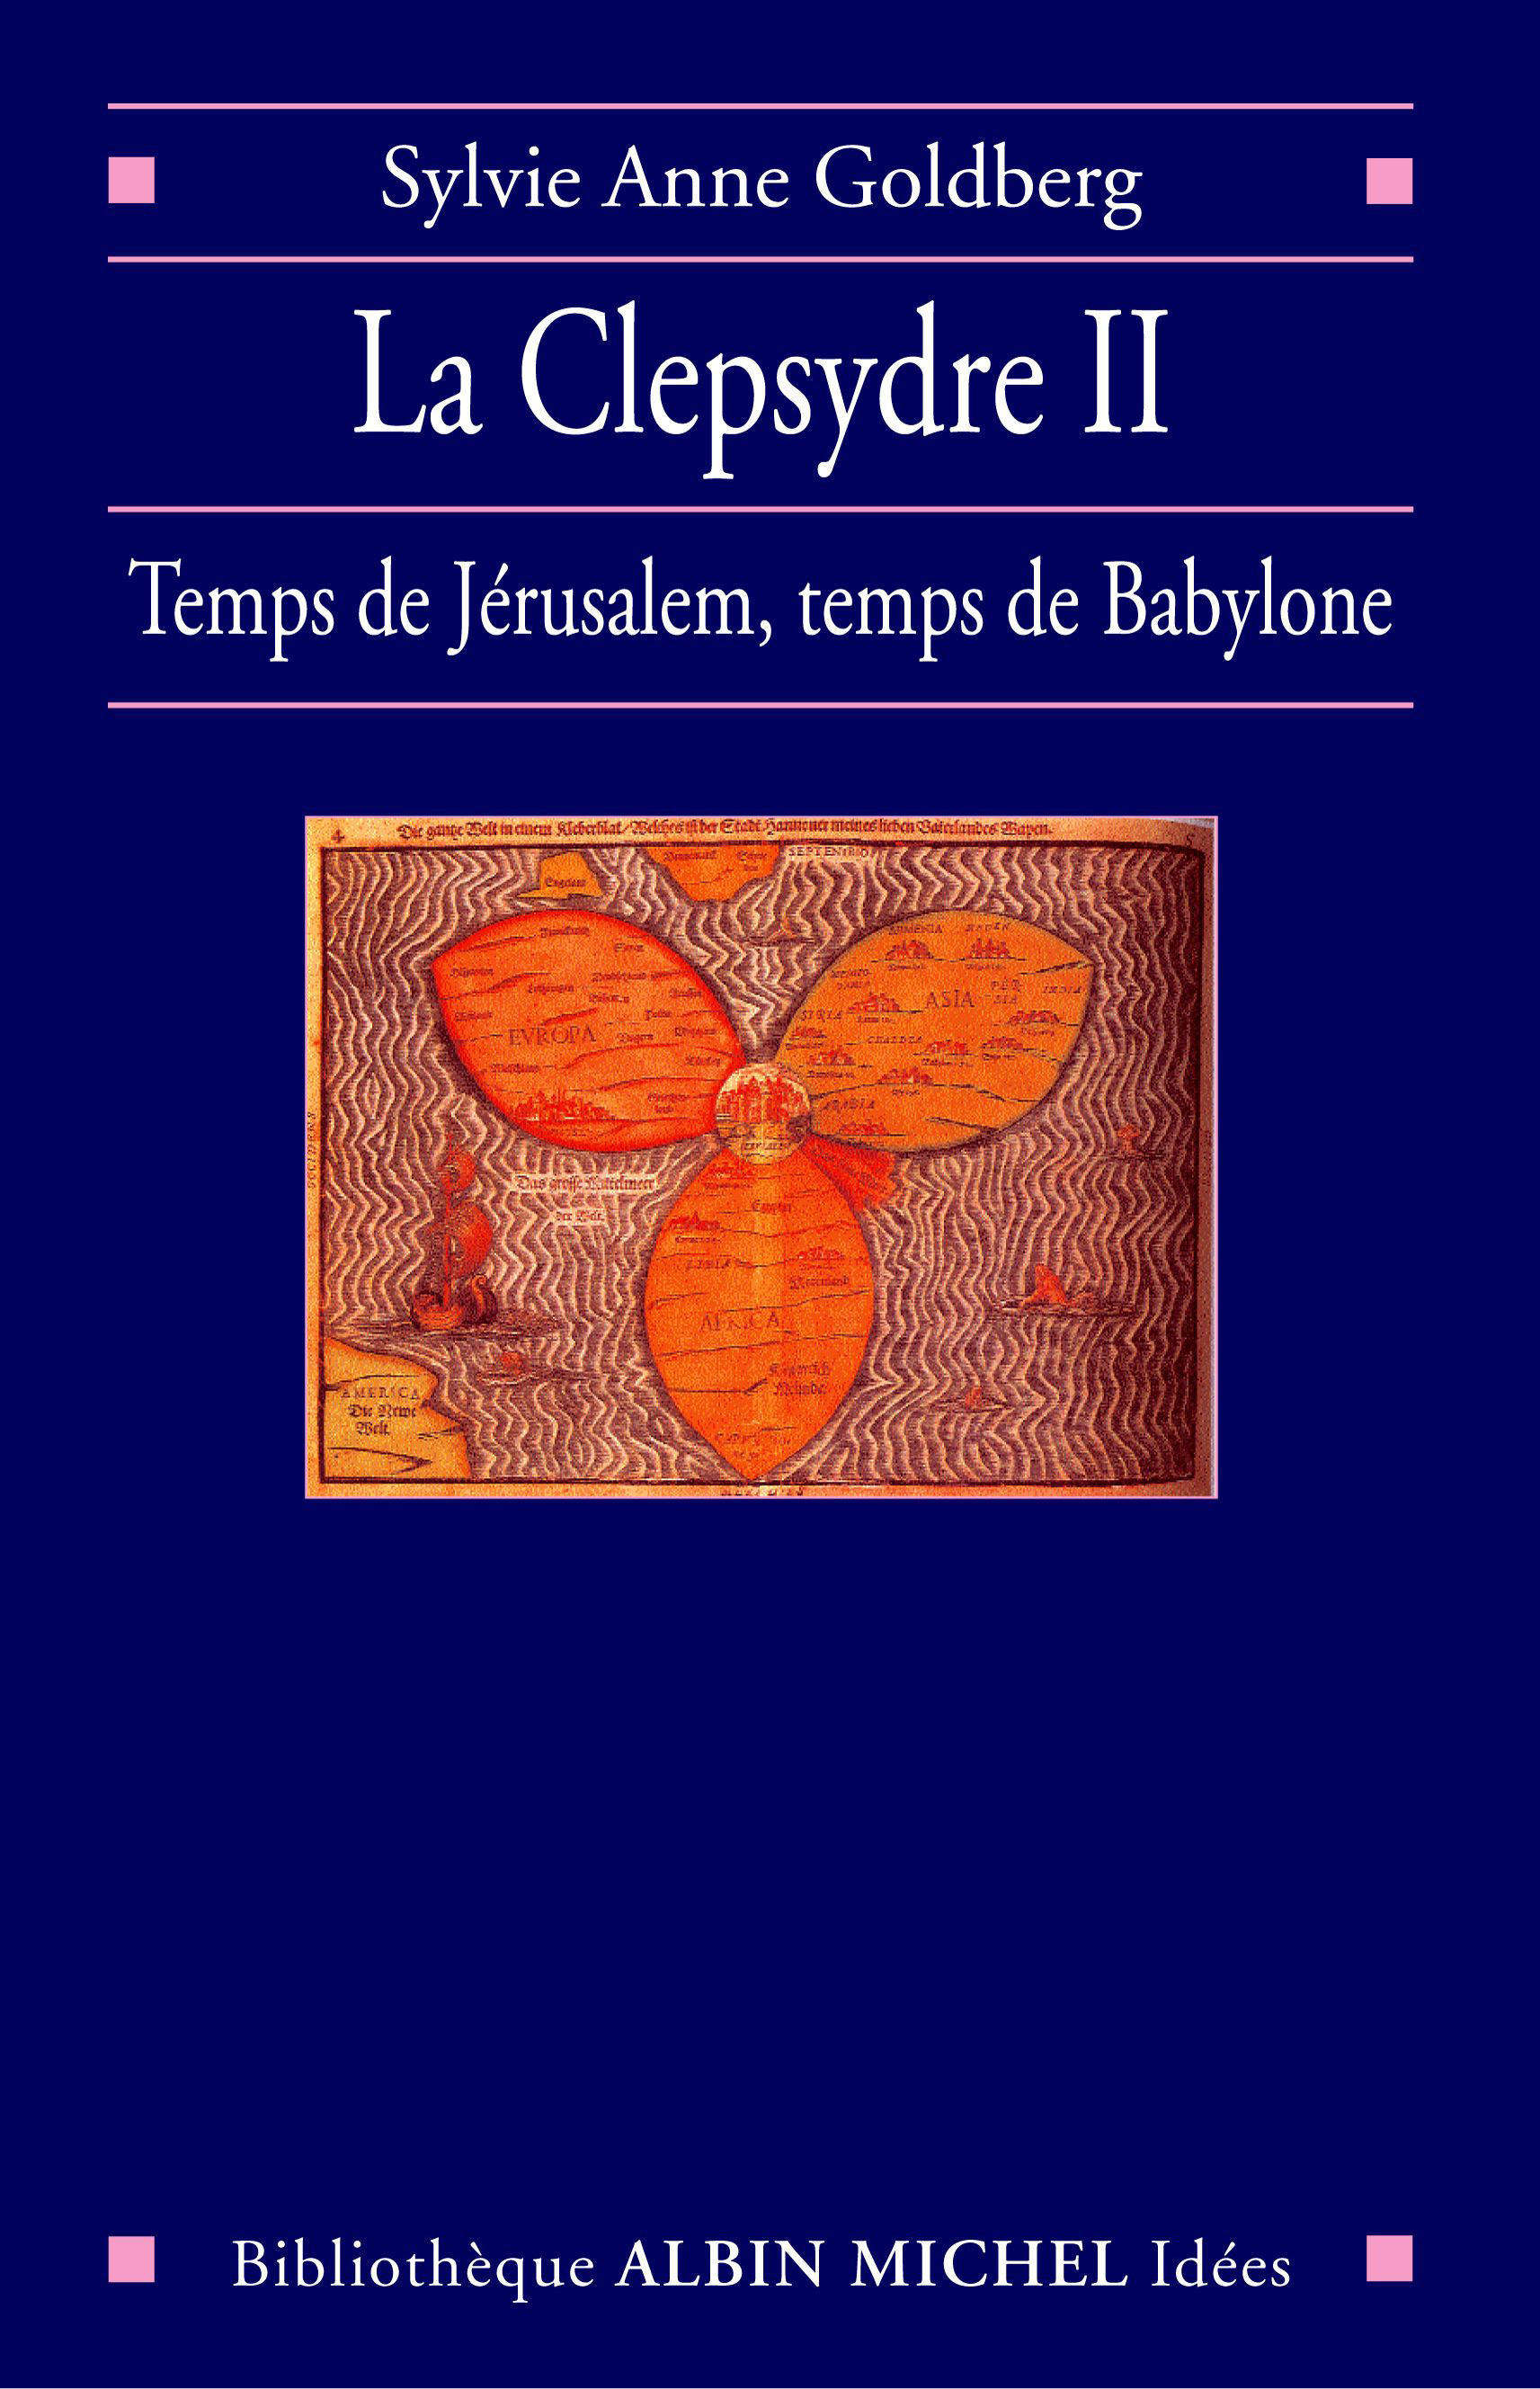 Couverture du livre La Clepsydre II